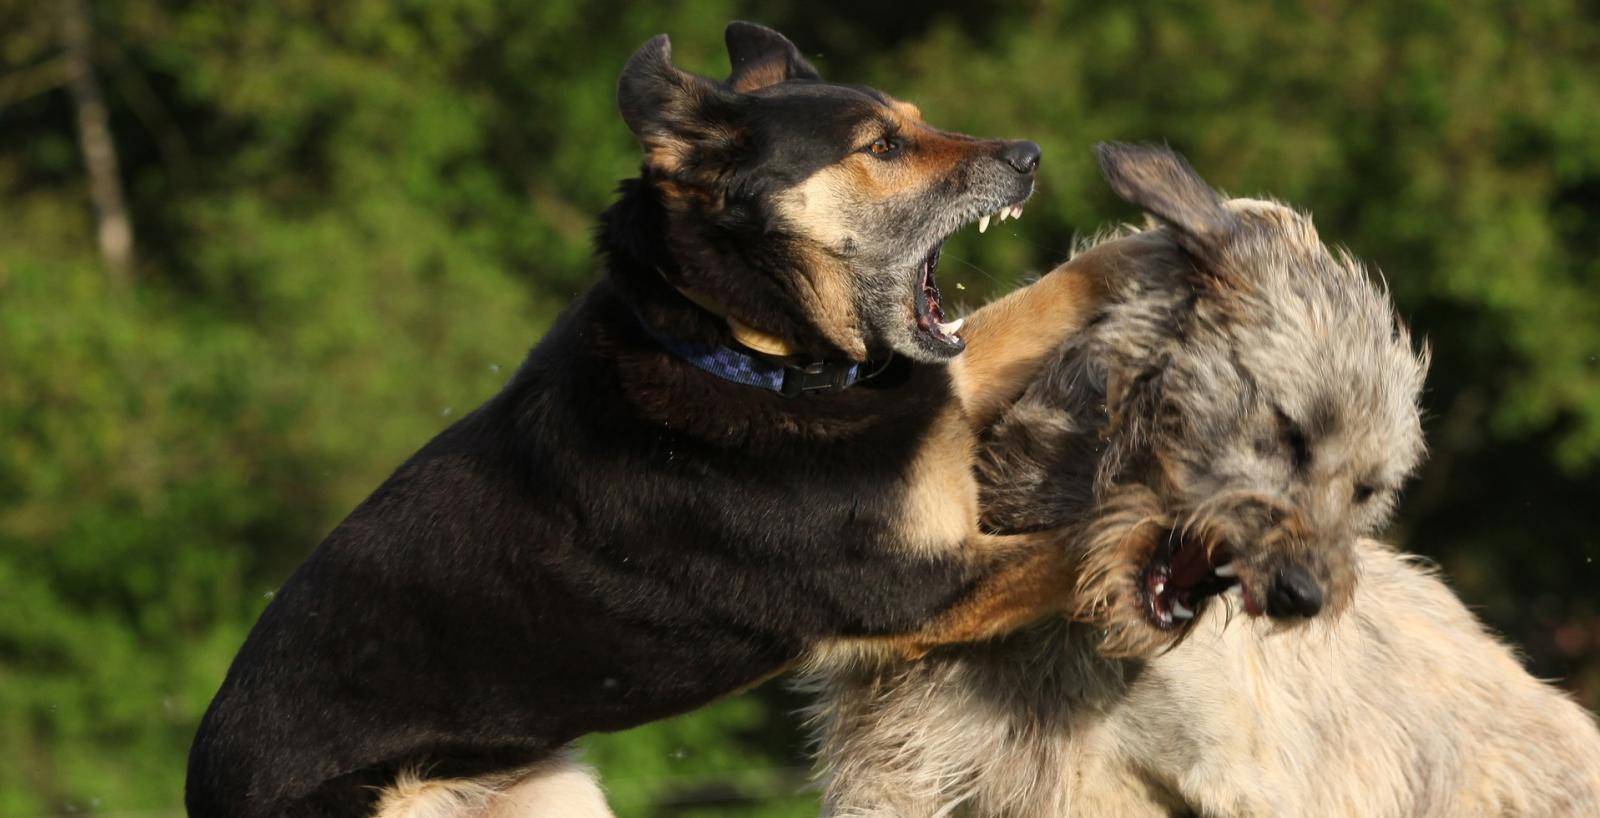 Агрессия у собак: виды, признаки и способы коррекции